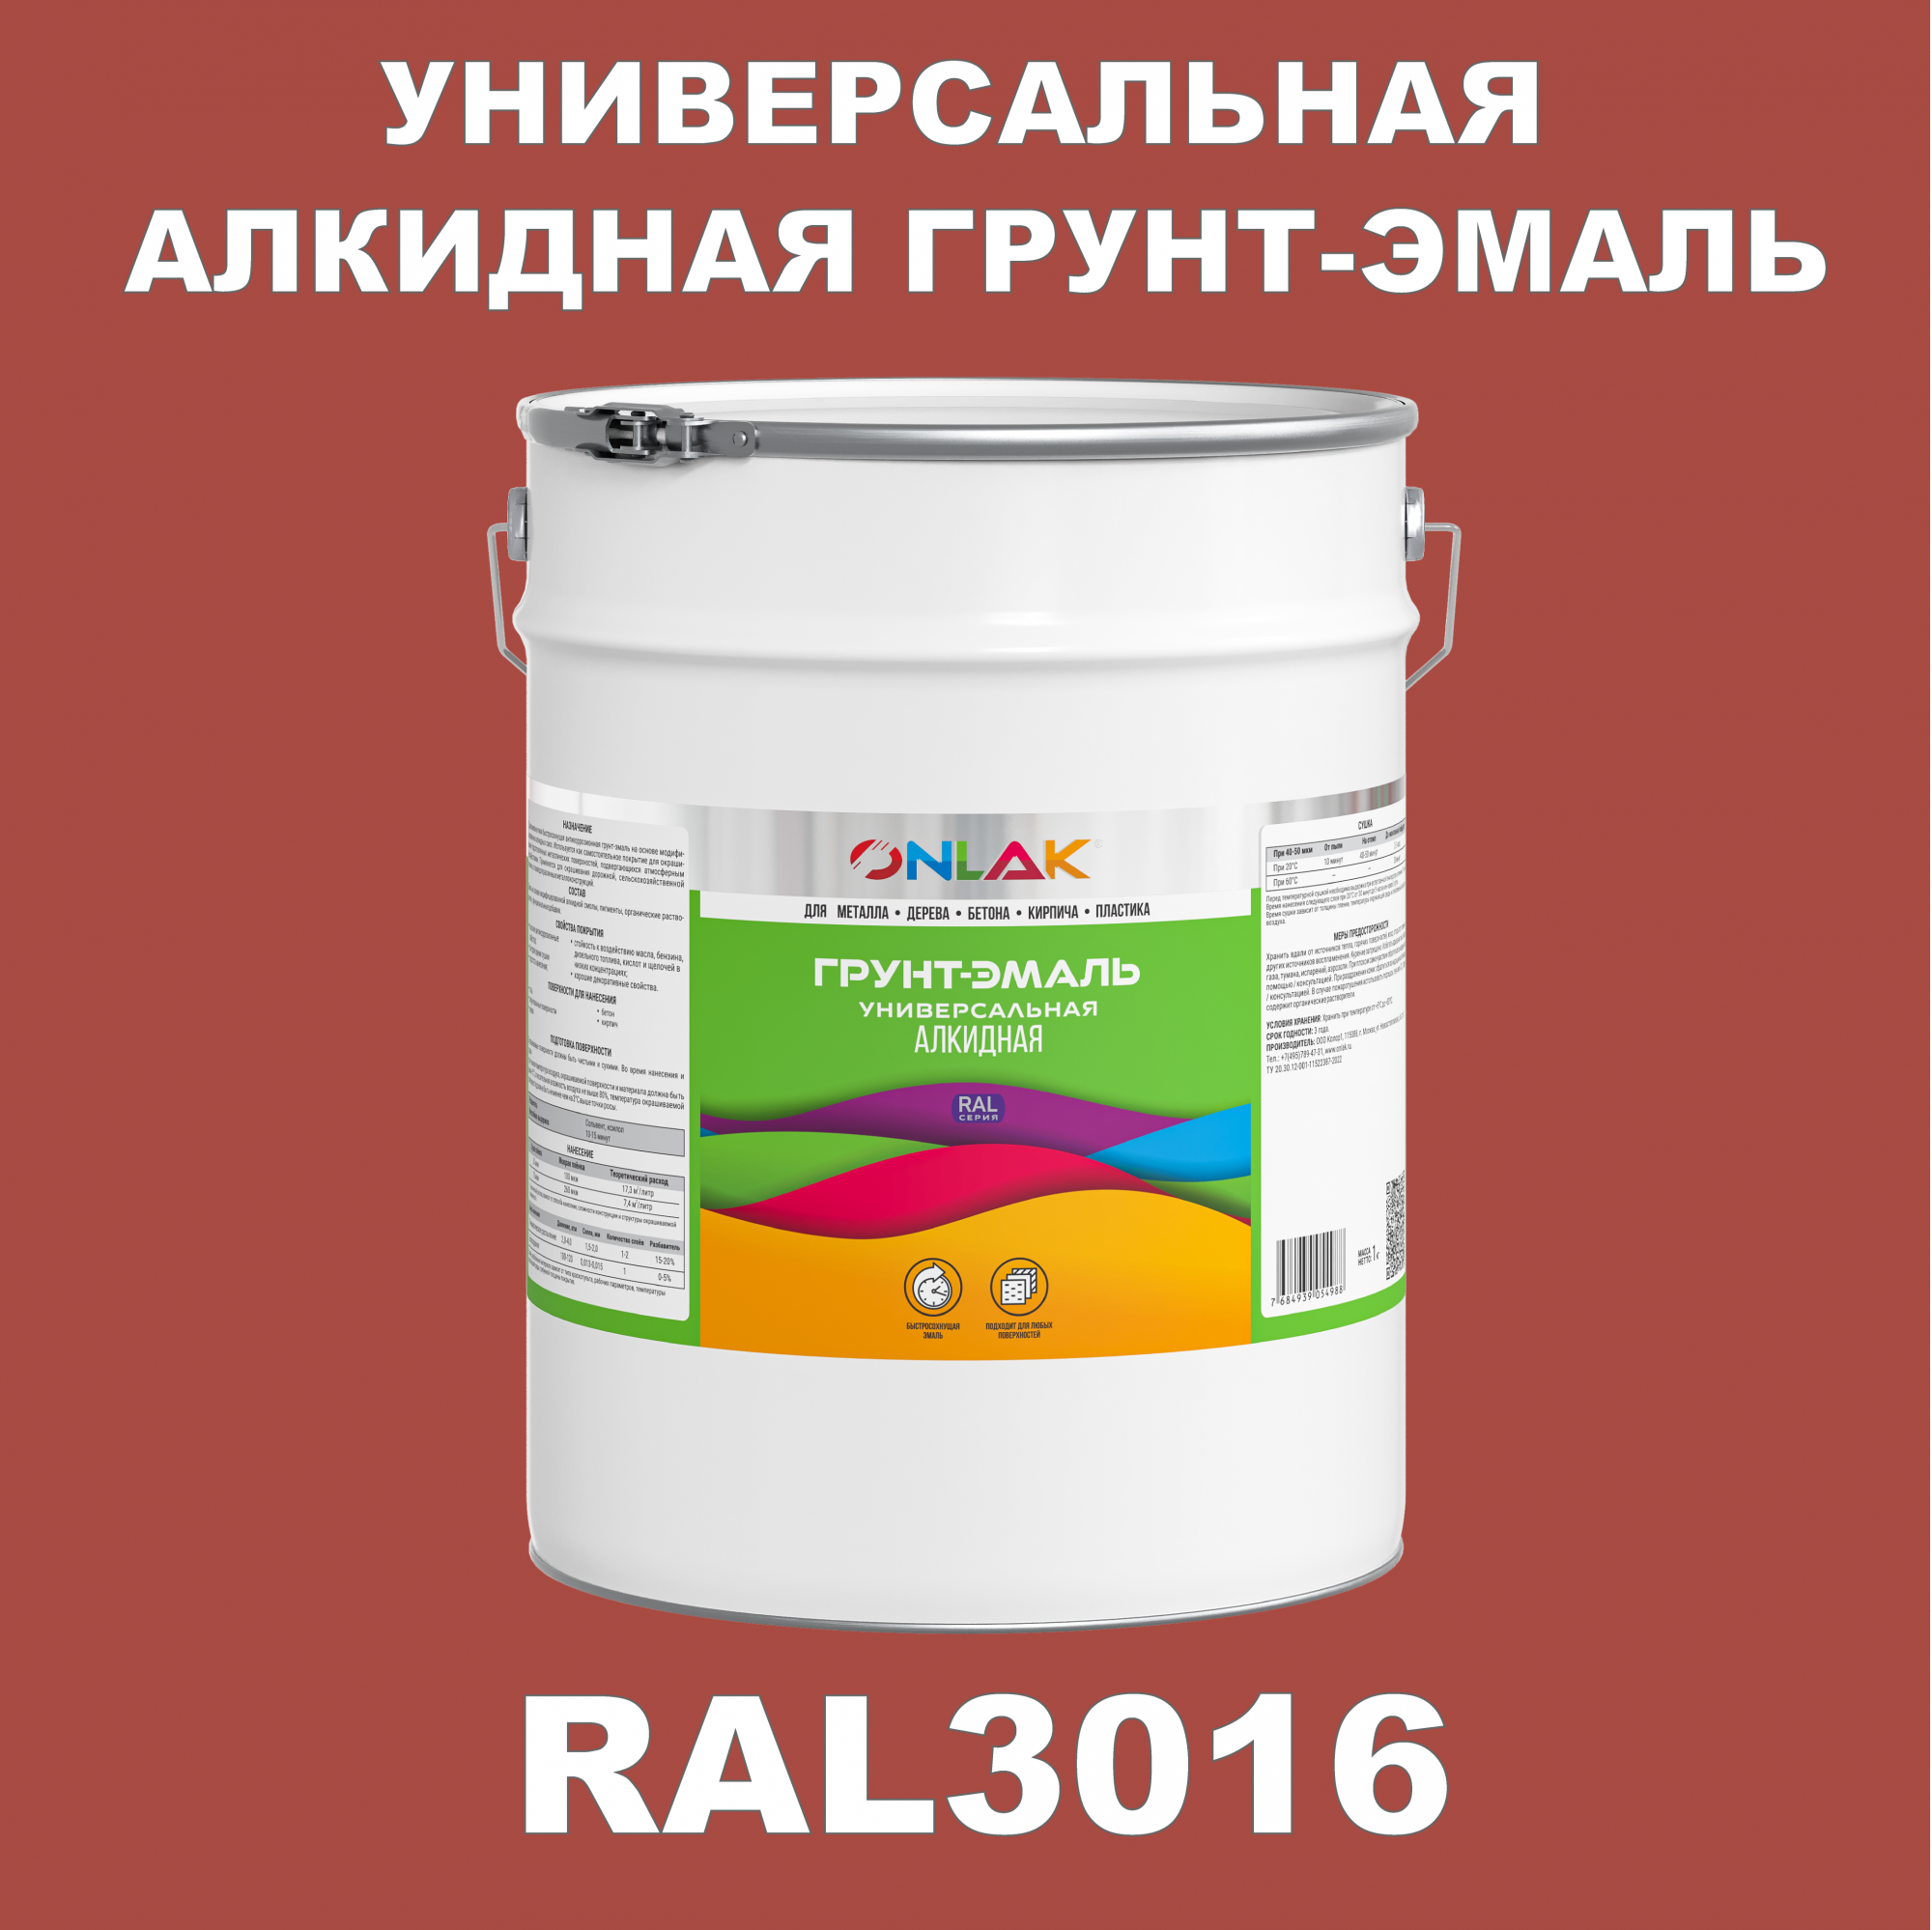 Грунт-эмаль ONLAK 1К RAL3016 антикоррозионная алкидная по металлу по ржавчине 20 кг грунт эмаль yollo по ржавчине алкидная серая 0 9 кг